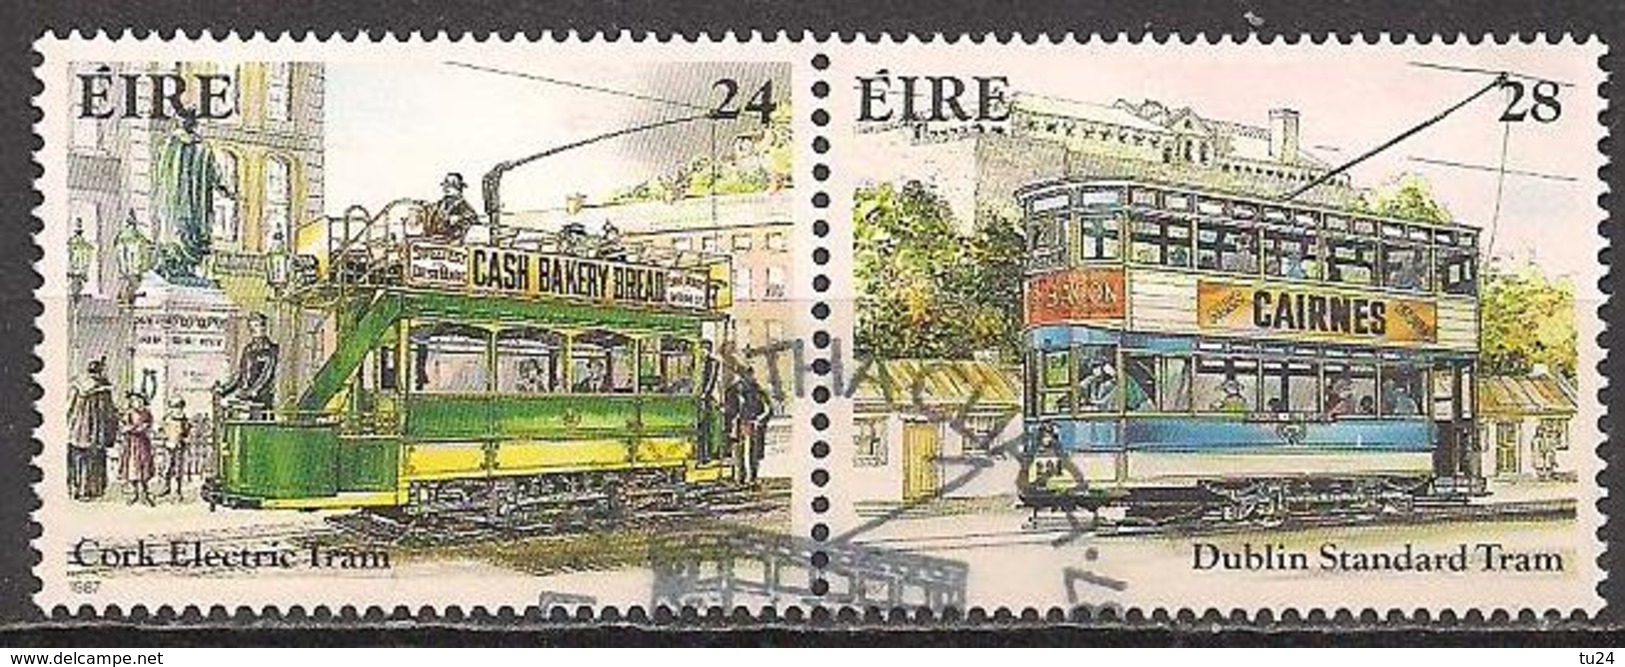 Irland  (1987)  Mi.Nr.  615 + 616  Gest. / Used  (2ae11) - Used Stamps